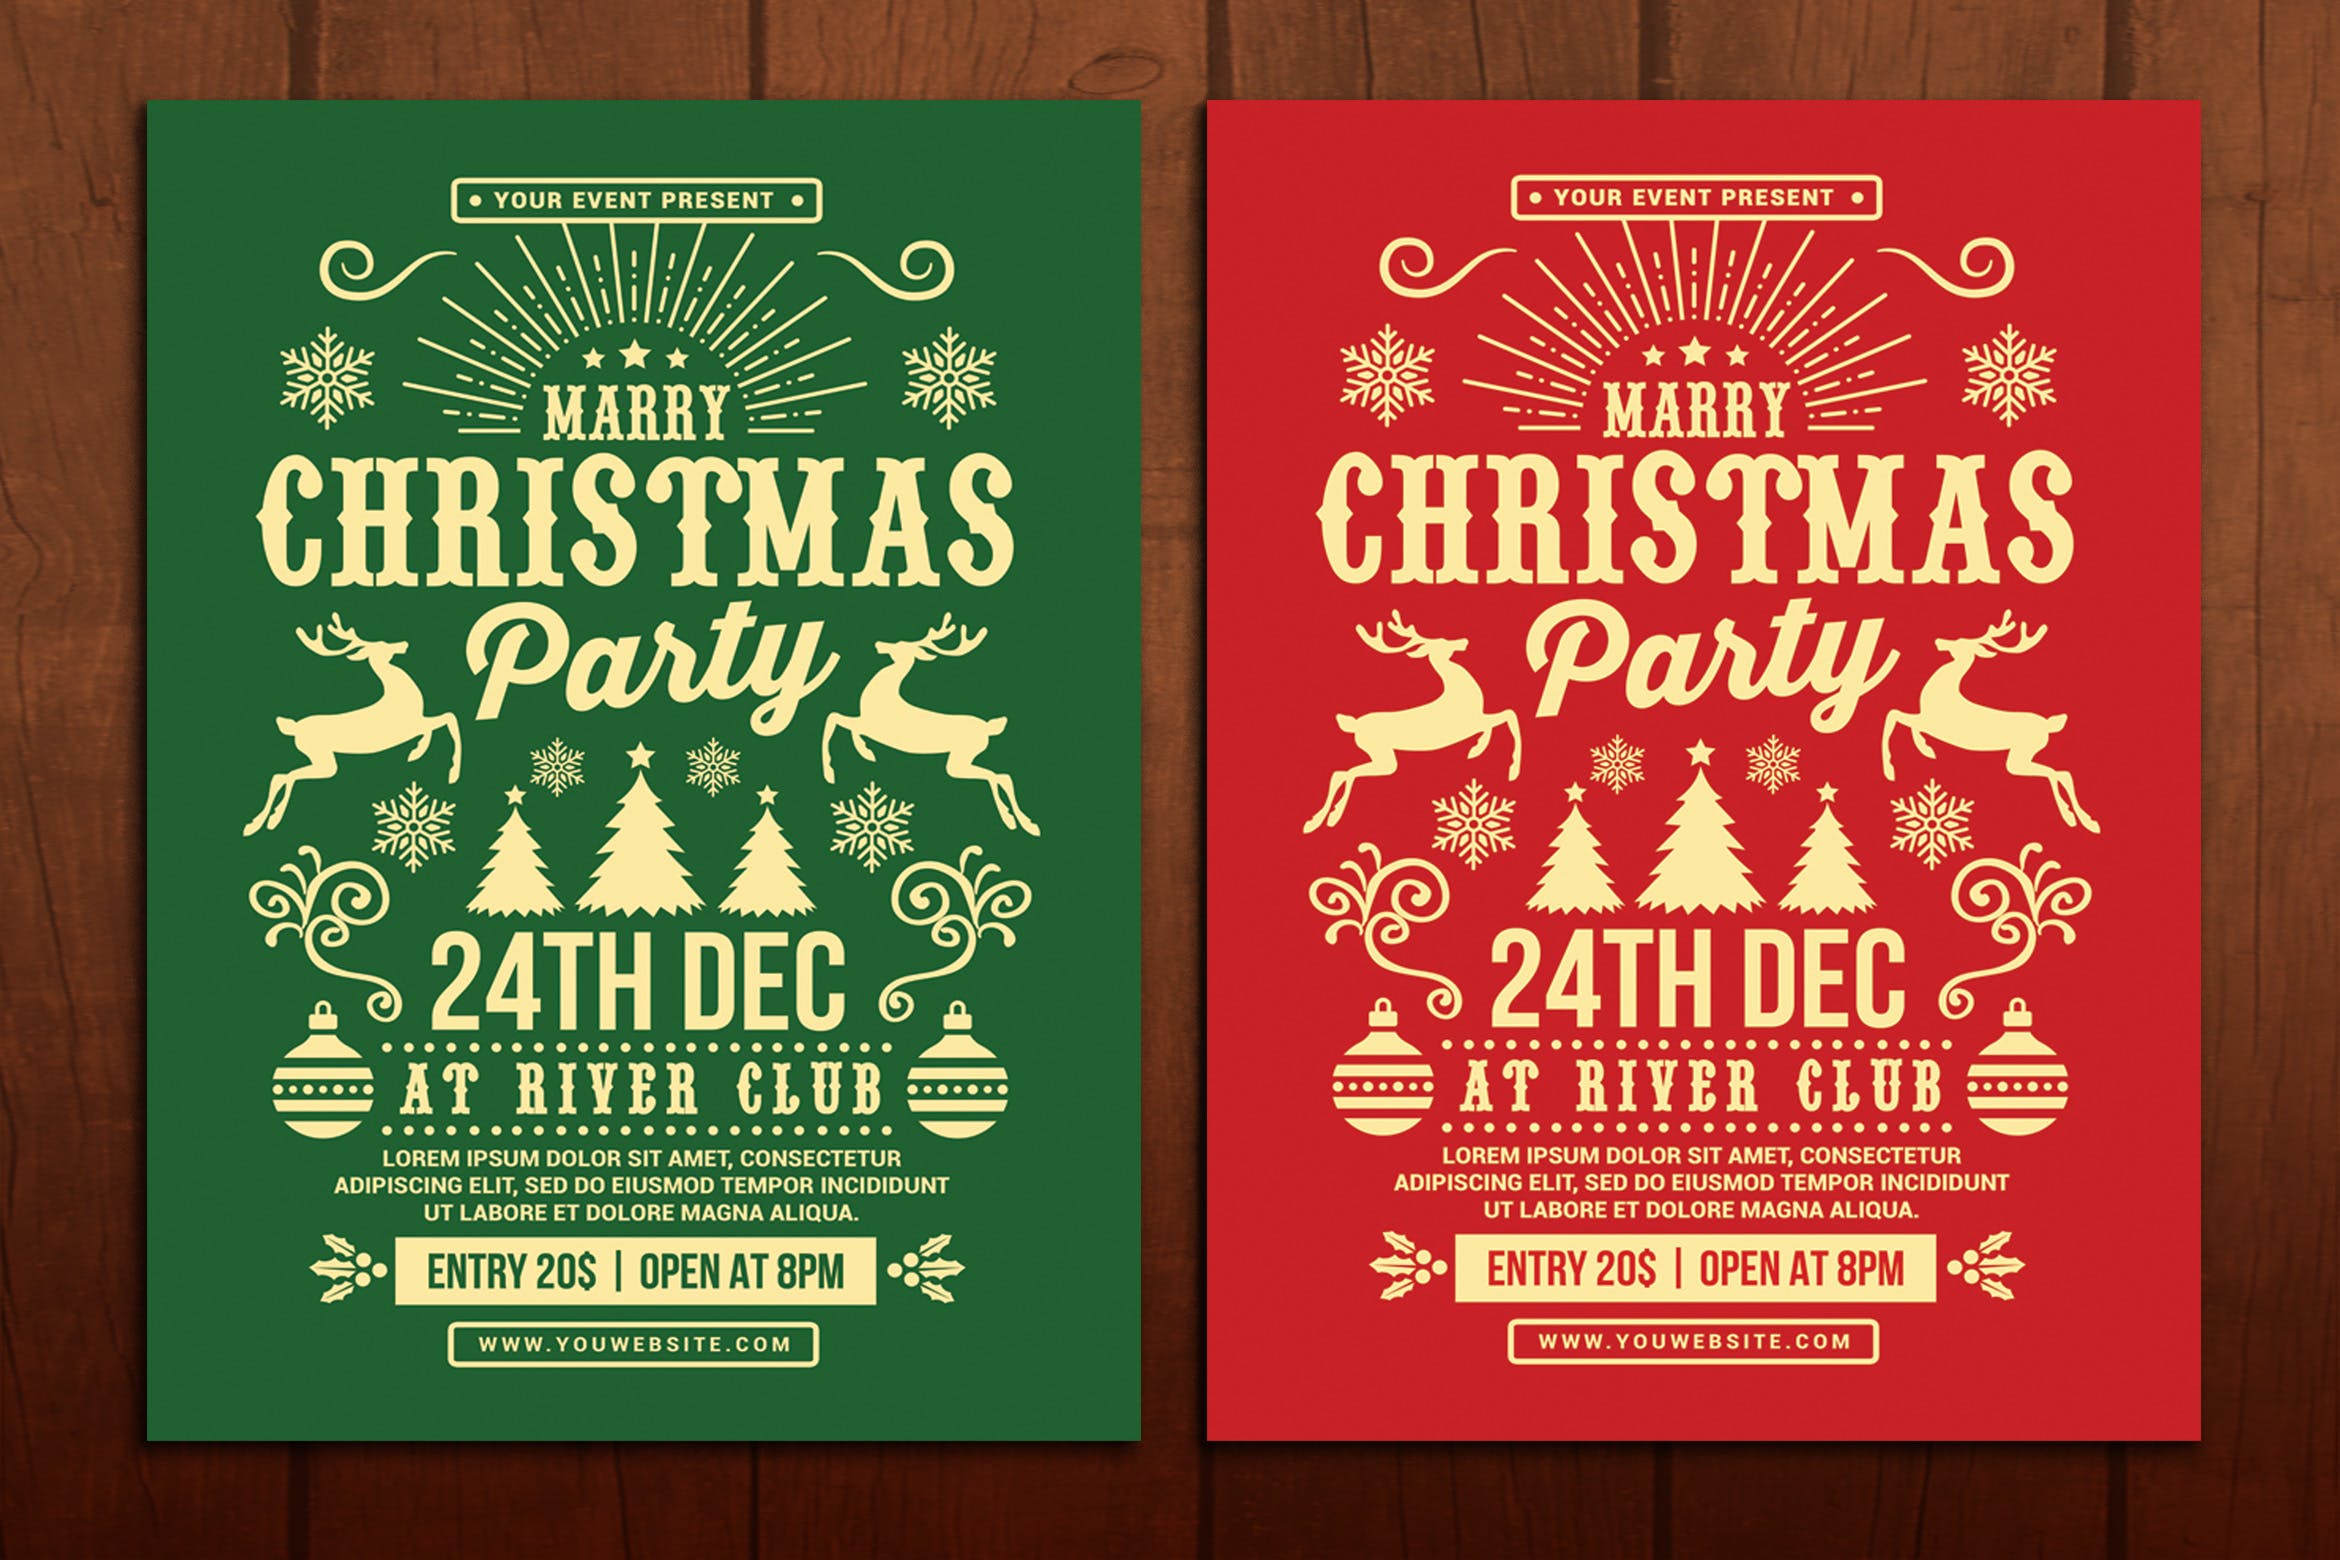 2019年圣诞节活动派对海报传单设计模板 Christmas Party Flyer插图